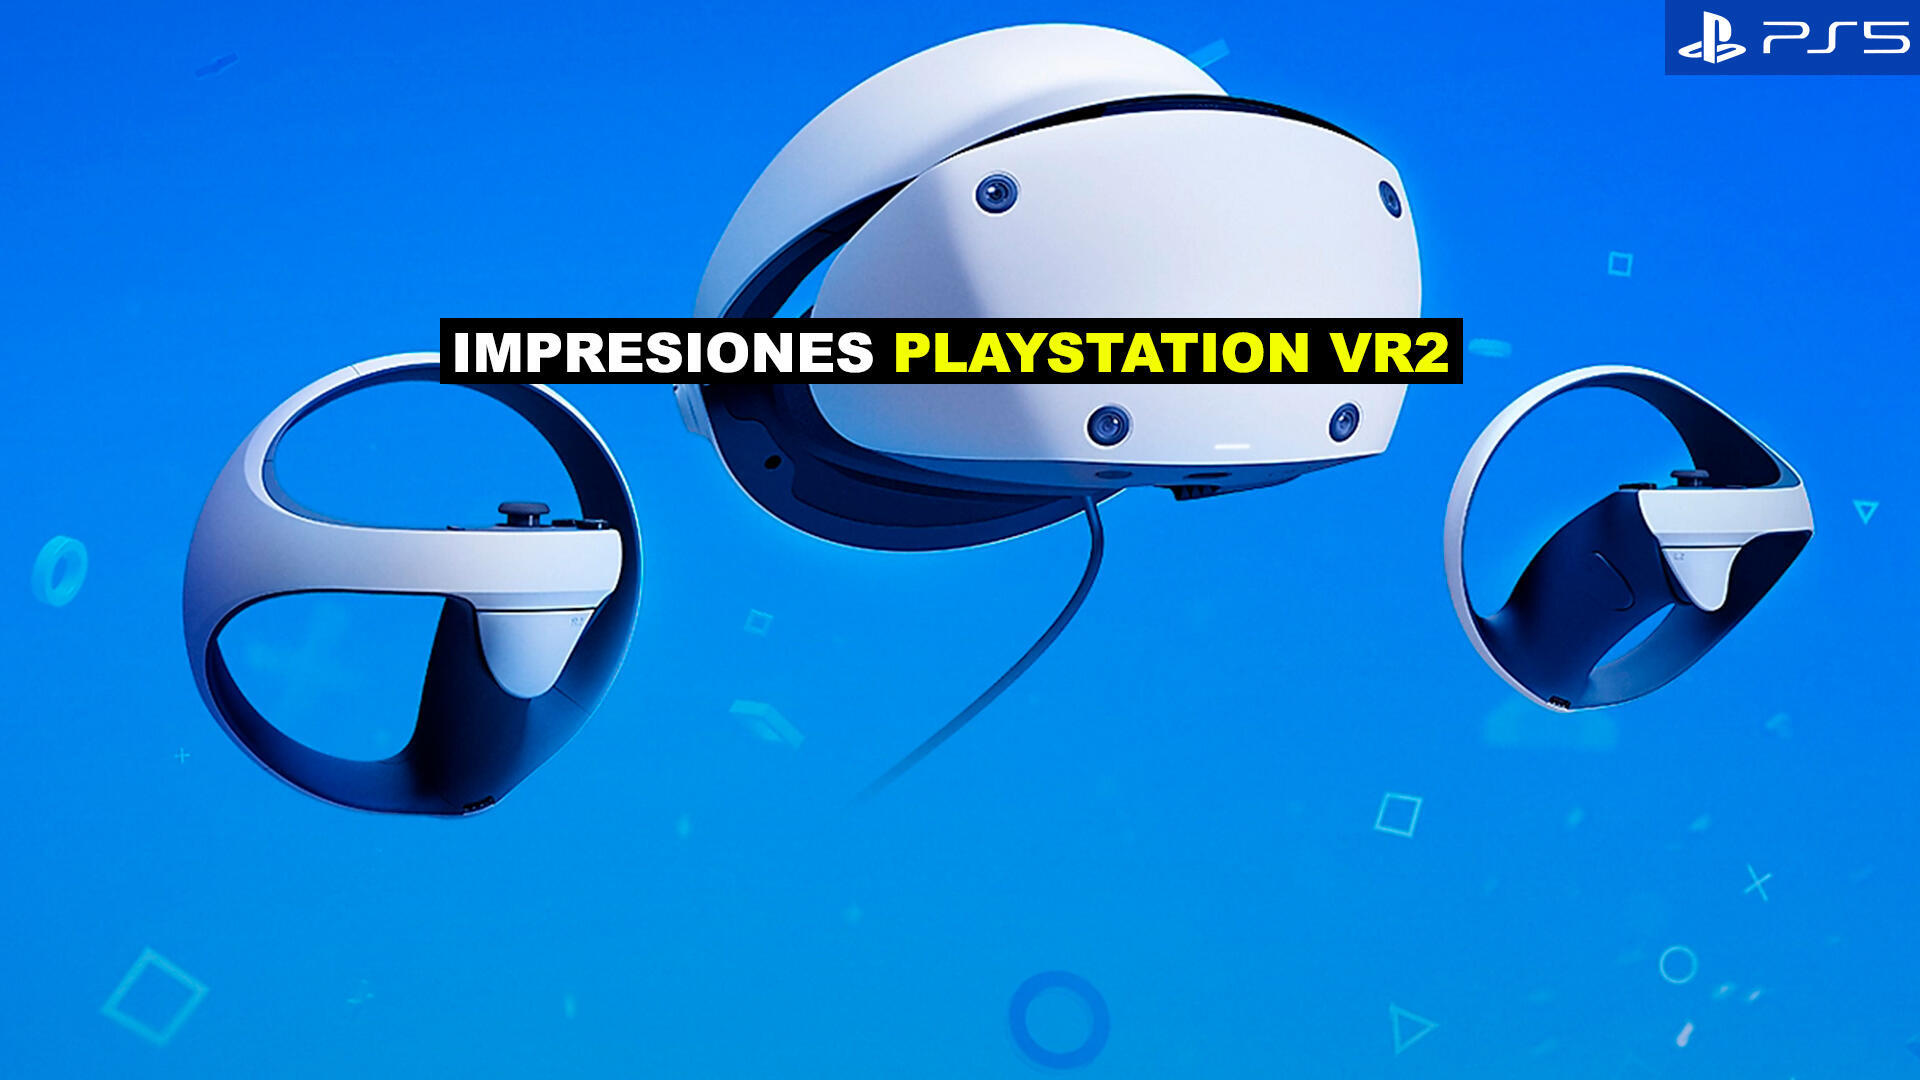 Sony revela al fin PS VR 2, el casco de realidad virtual de PS5